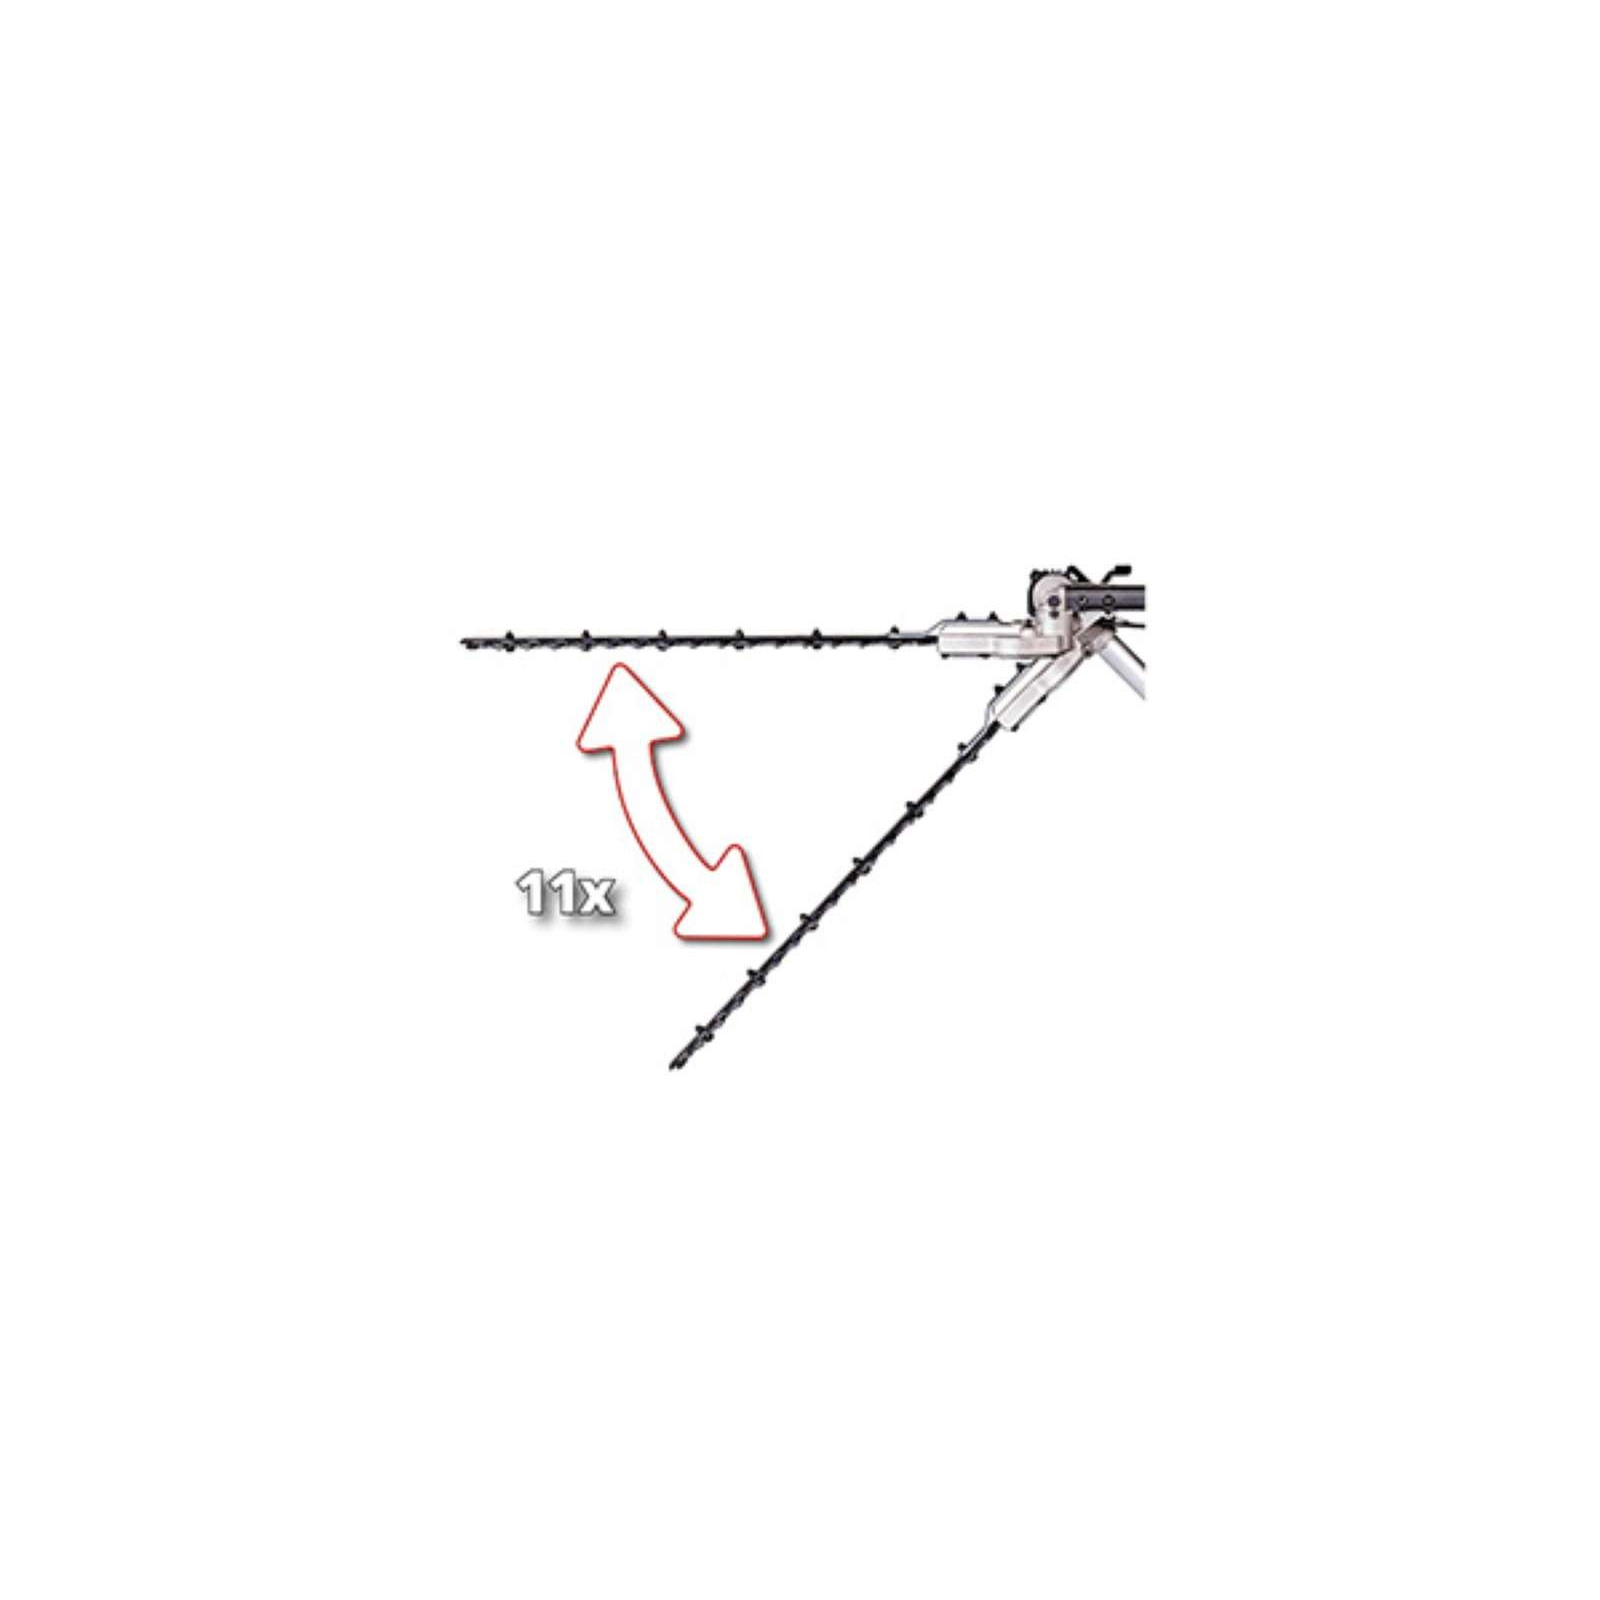 Кусторез Einhell телескопический GC-HH 9046, 900Вт, 460мм, шаг 20мм, штанга 1.97-2.6м (3403880) изображение 3